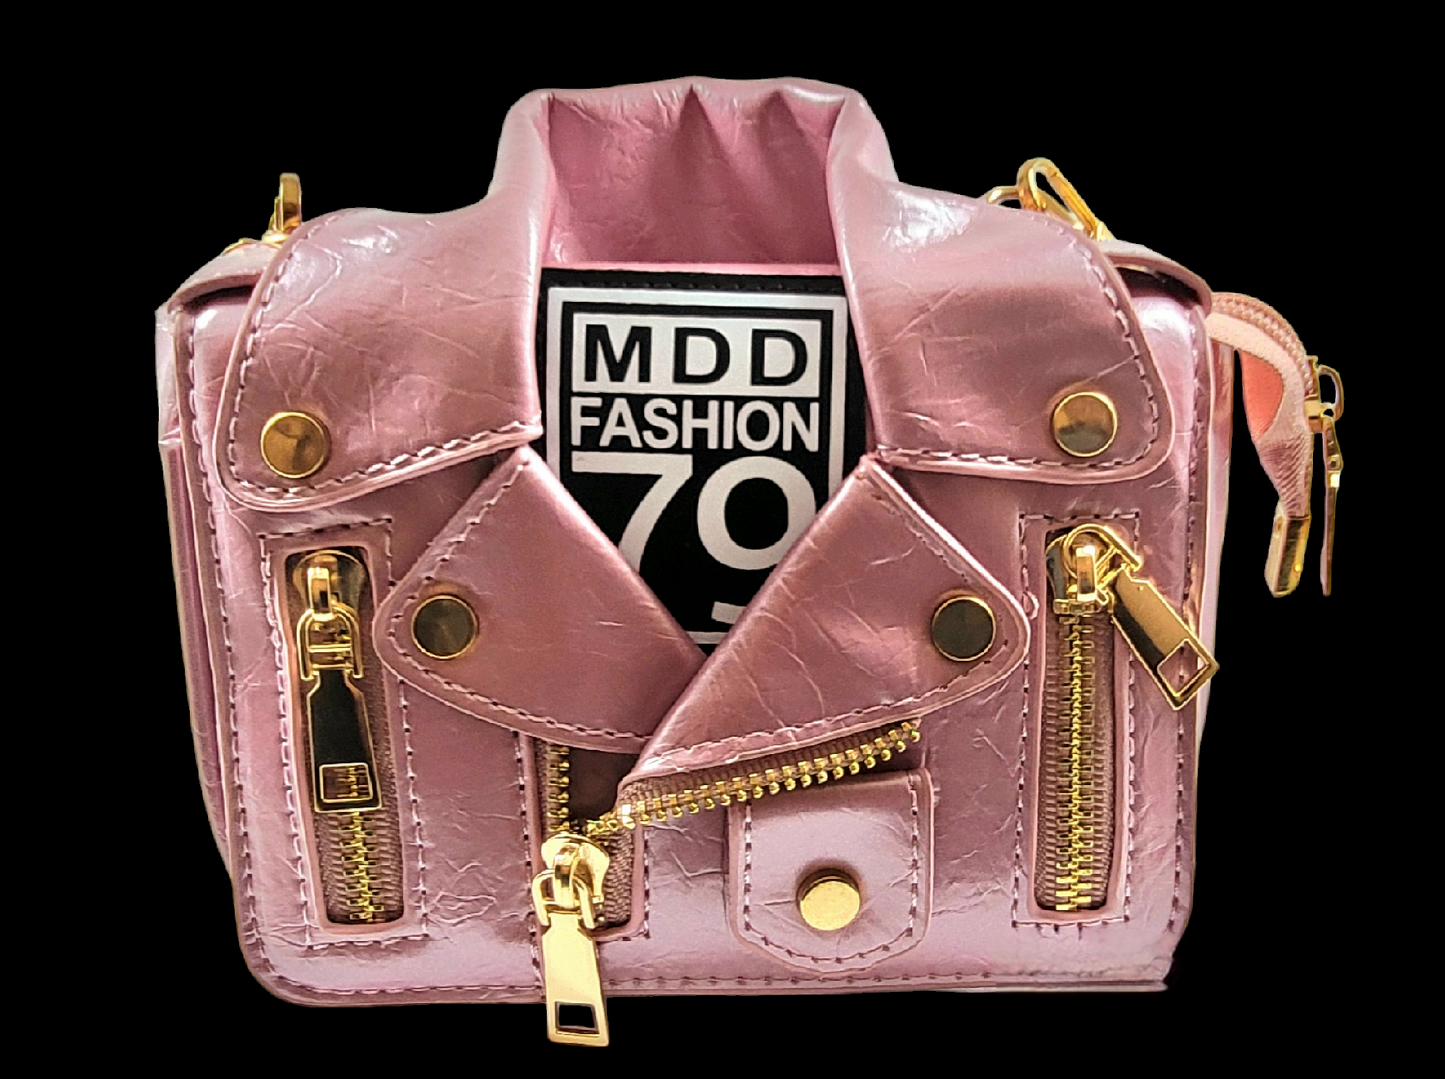 Handtasche Battler Lover "Mode, die mit dir geht."